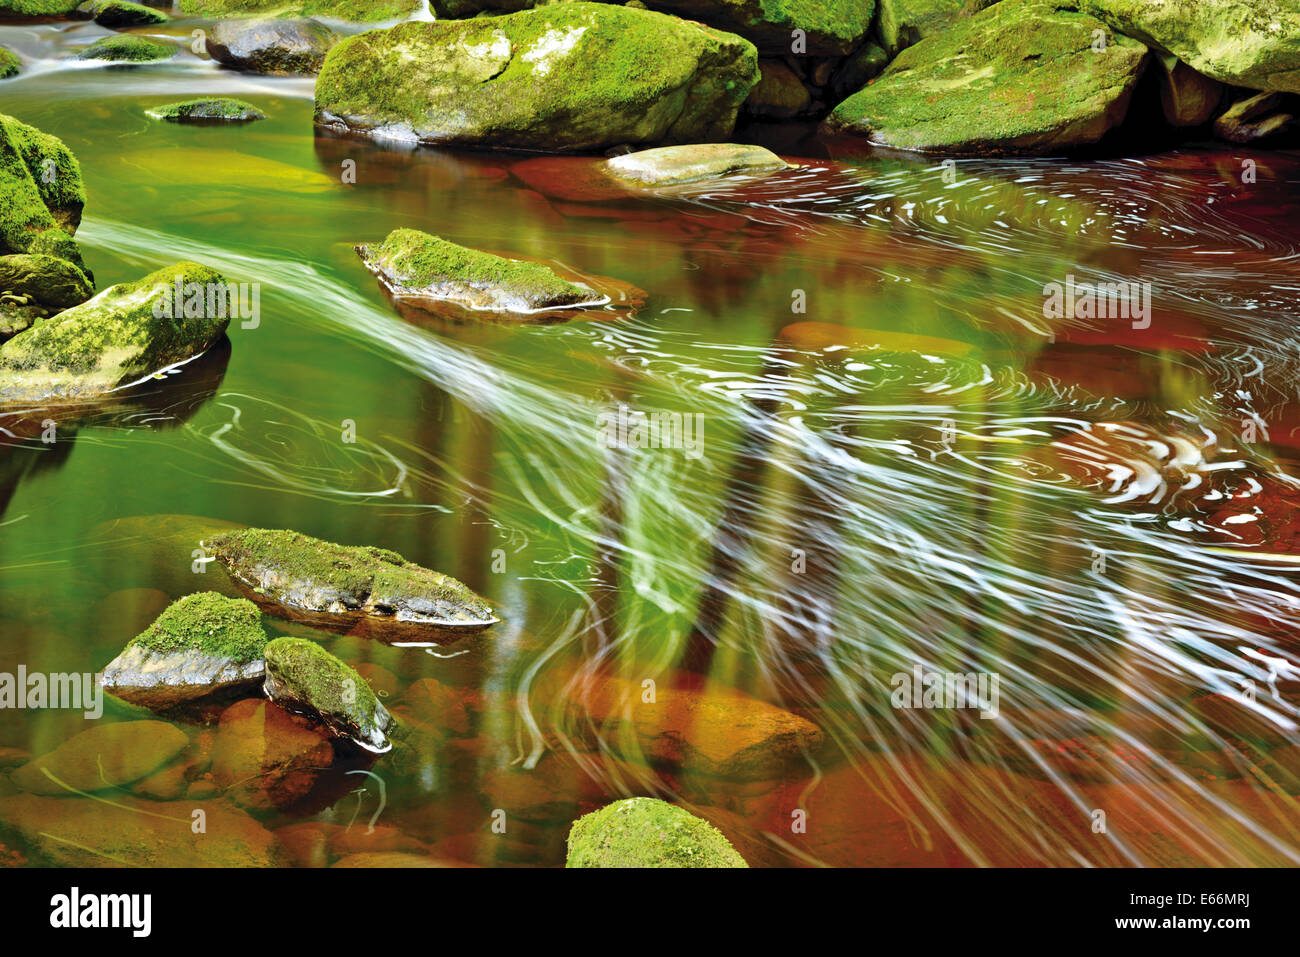 Germany, Bavaria: Water running through flume 'Steinklamm' inside of Nature Park Bayrischer Wald Stock Photo